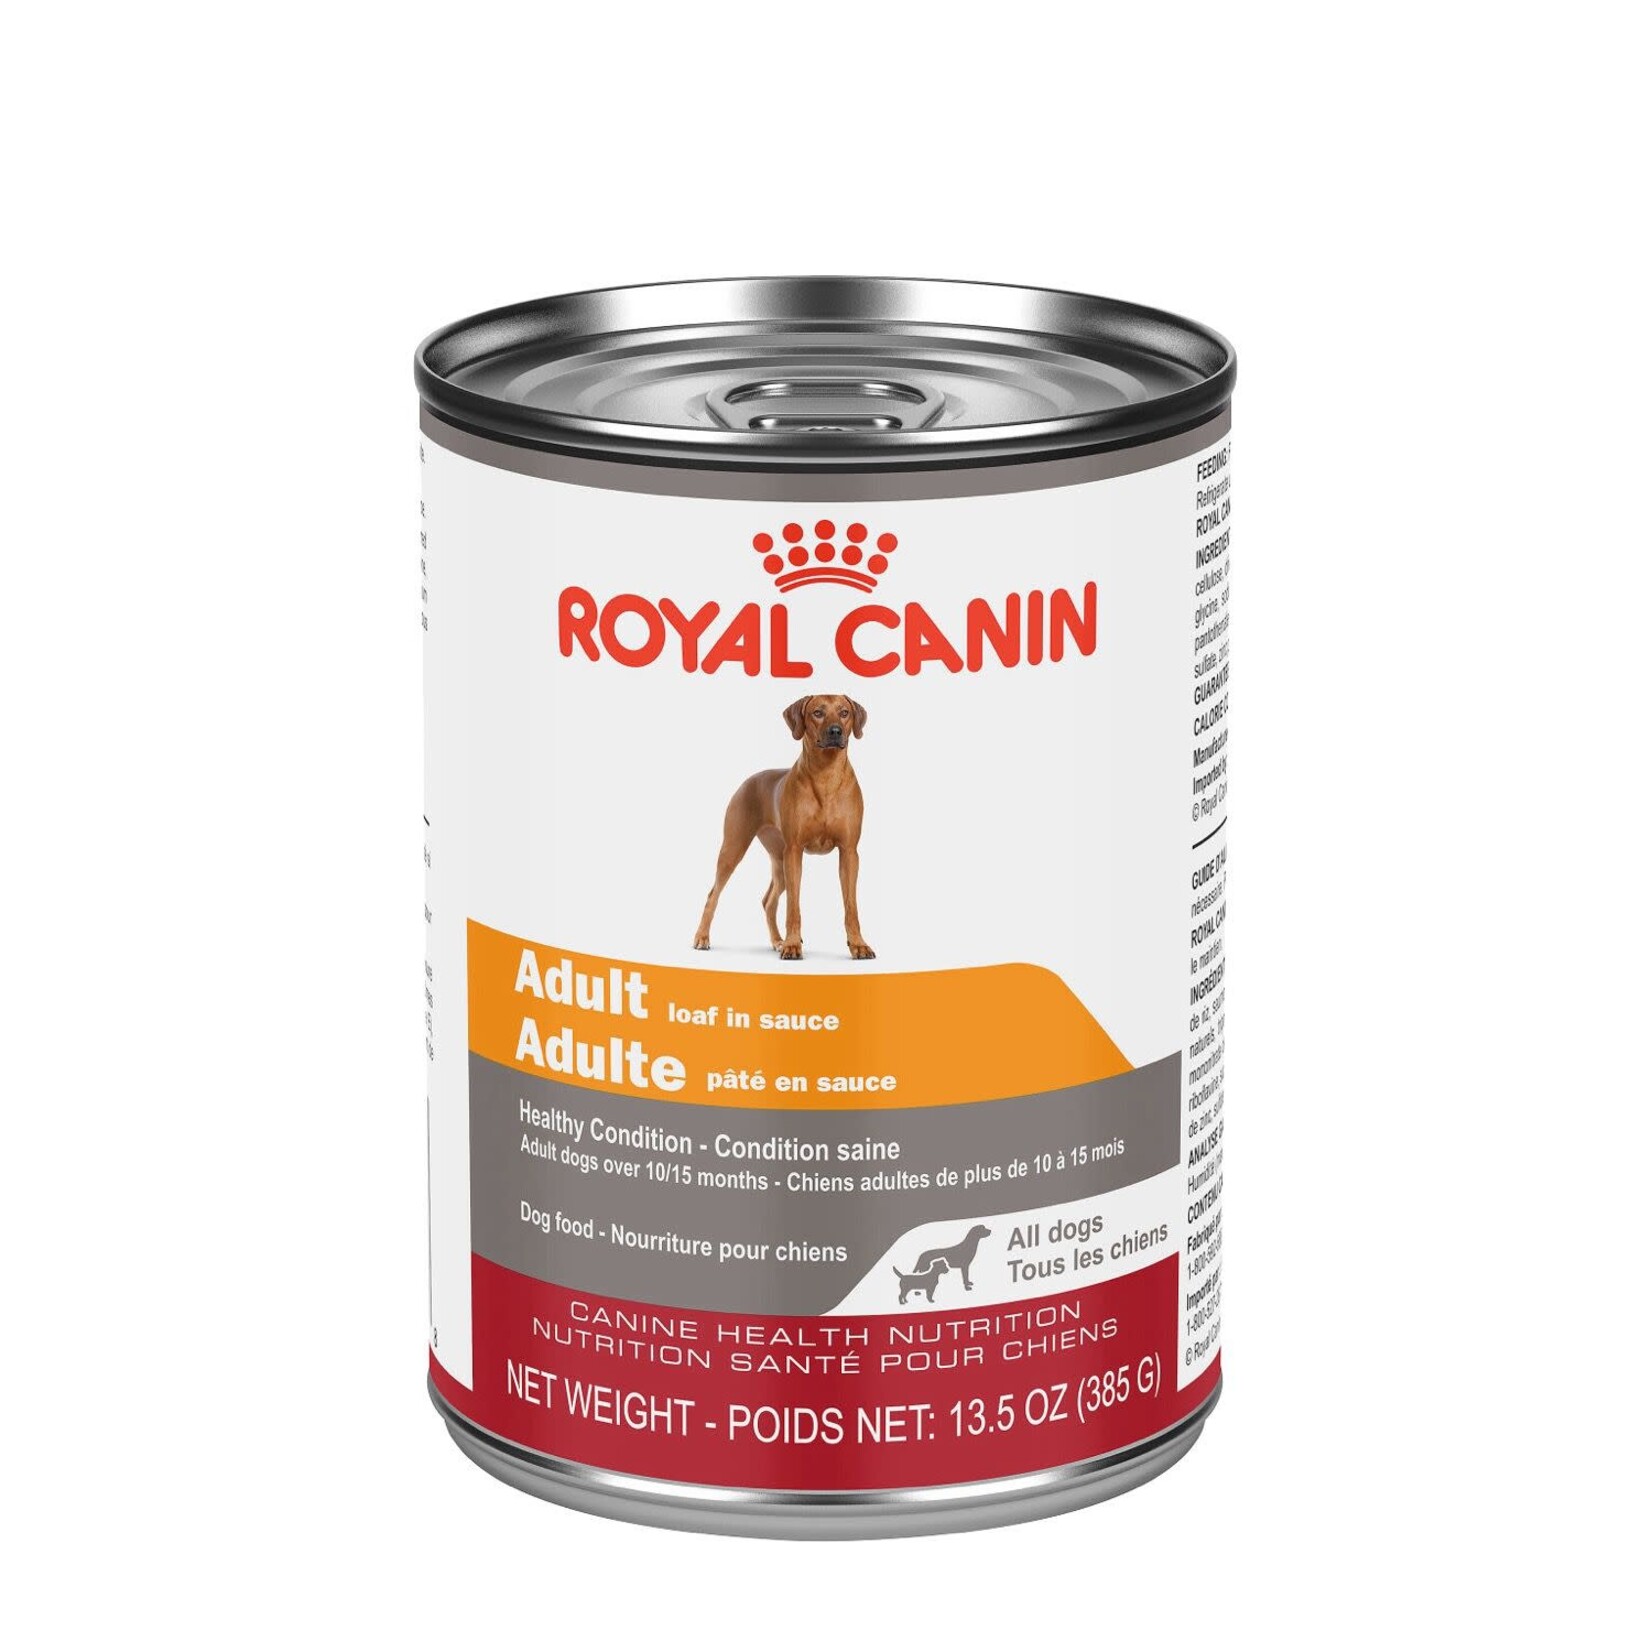 ROYAL CANIN ROYAL CANIN CHIEN ADULTE NOURRITURE HUMIDE EN PATÉ 385 G